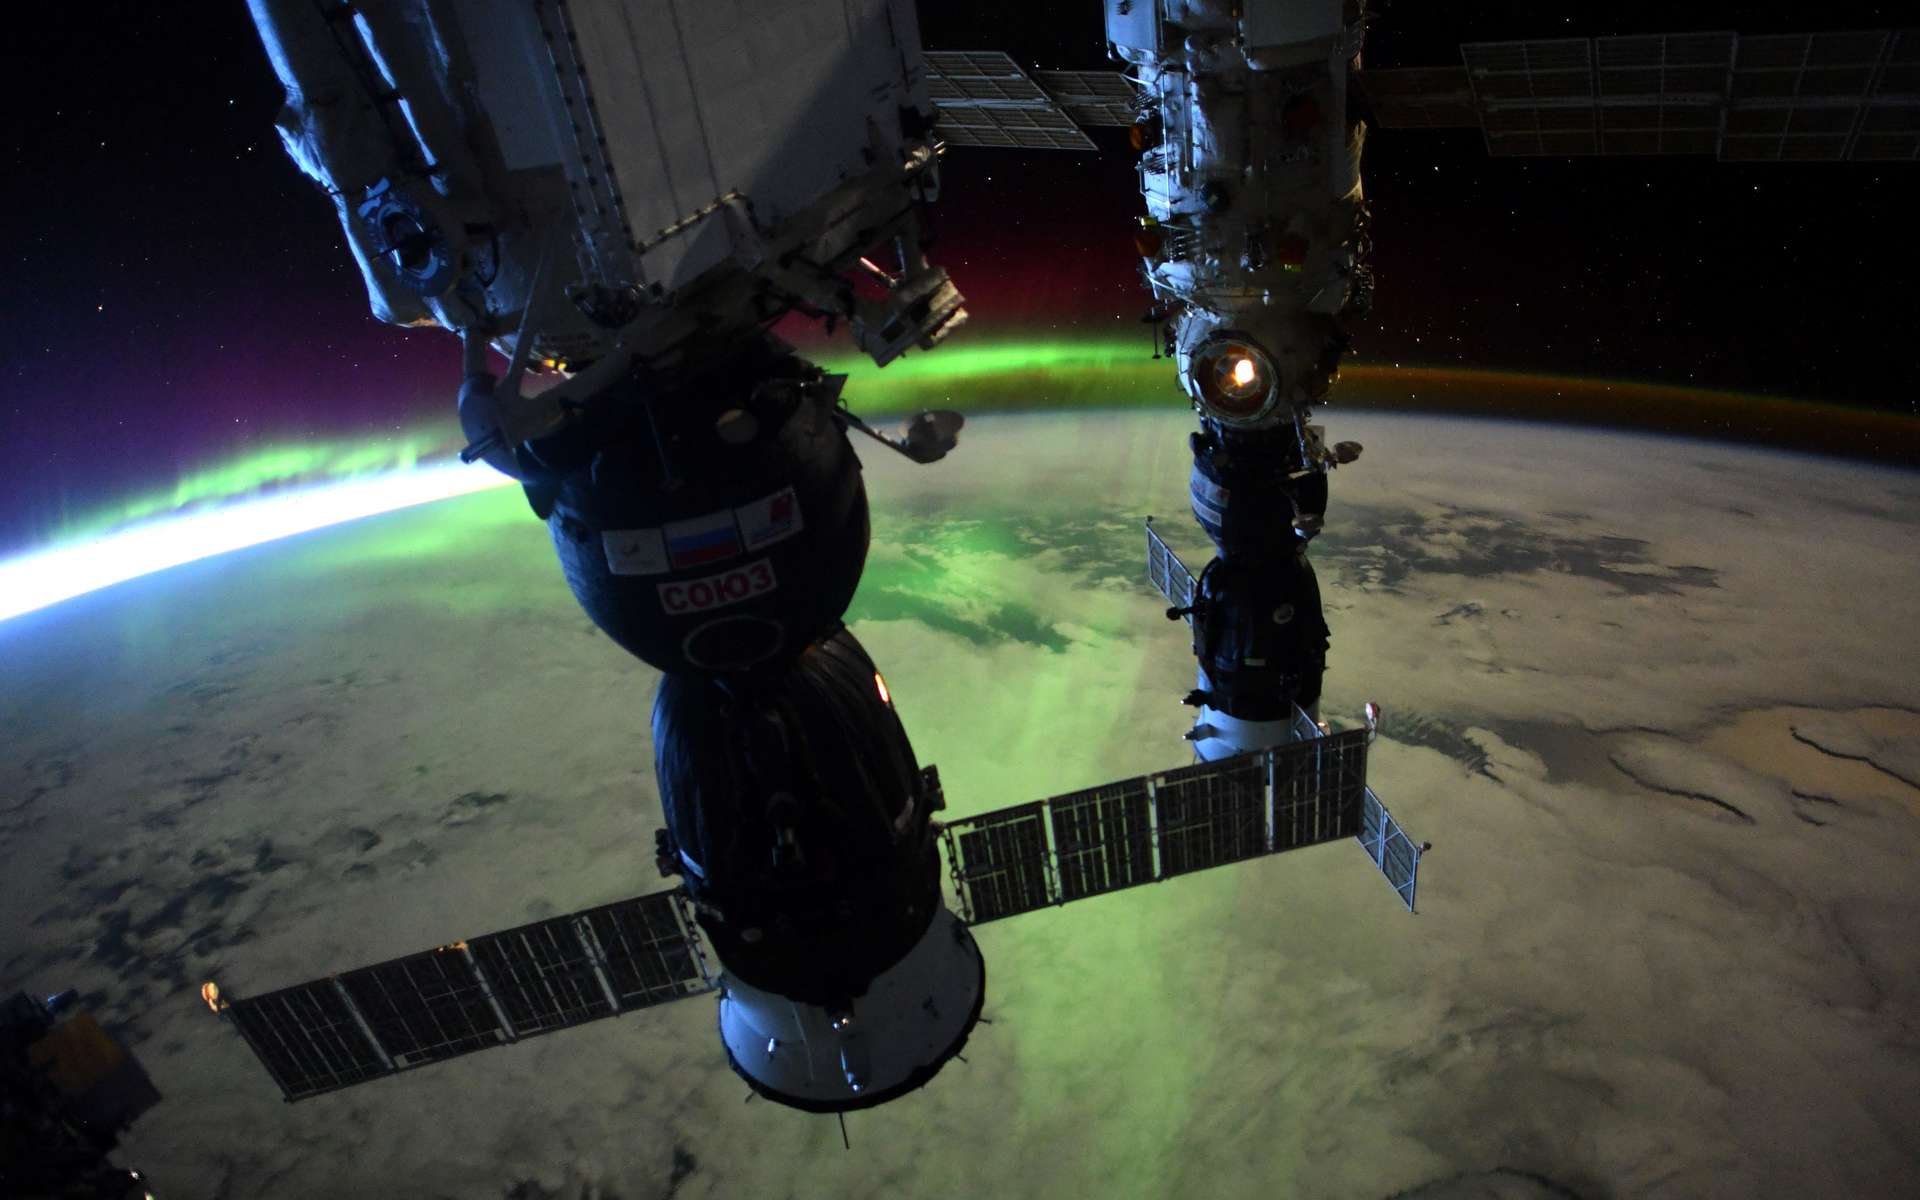 Les plus belles photos de la Terre prises par Thomas Pesquet lors de son séjour dans la Station spatiale